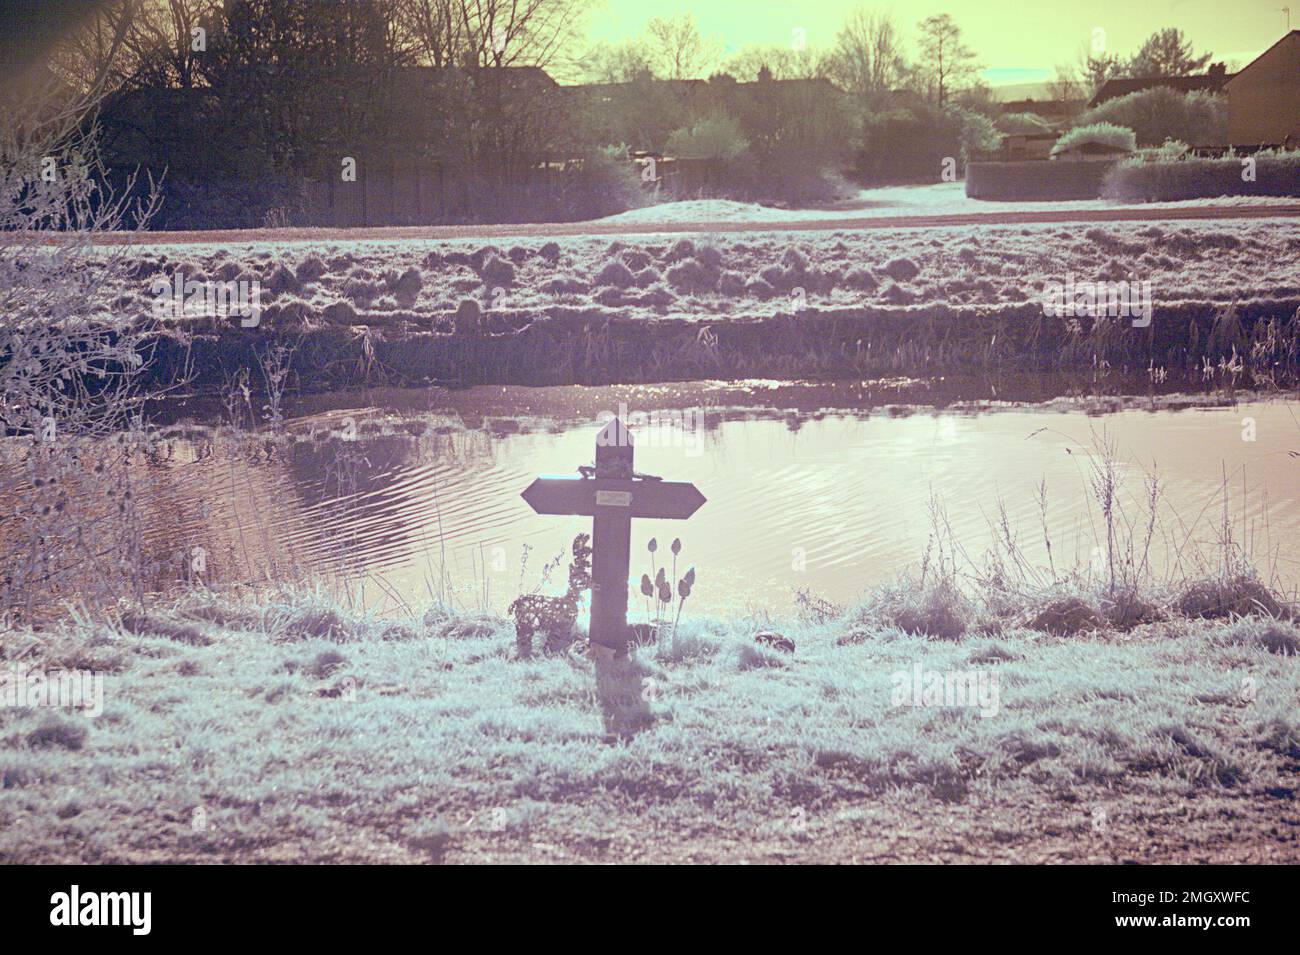 Infrarotbild-Faux-Color-Kreuz-Gedenkstätte des ertrinkenden Opfers, erschossen vom Forth und clyde-Kanal-Schleppweg in Clydebank Stockfoto